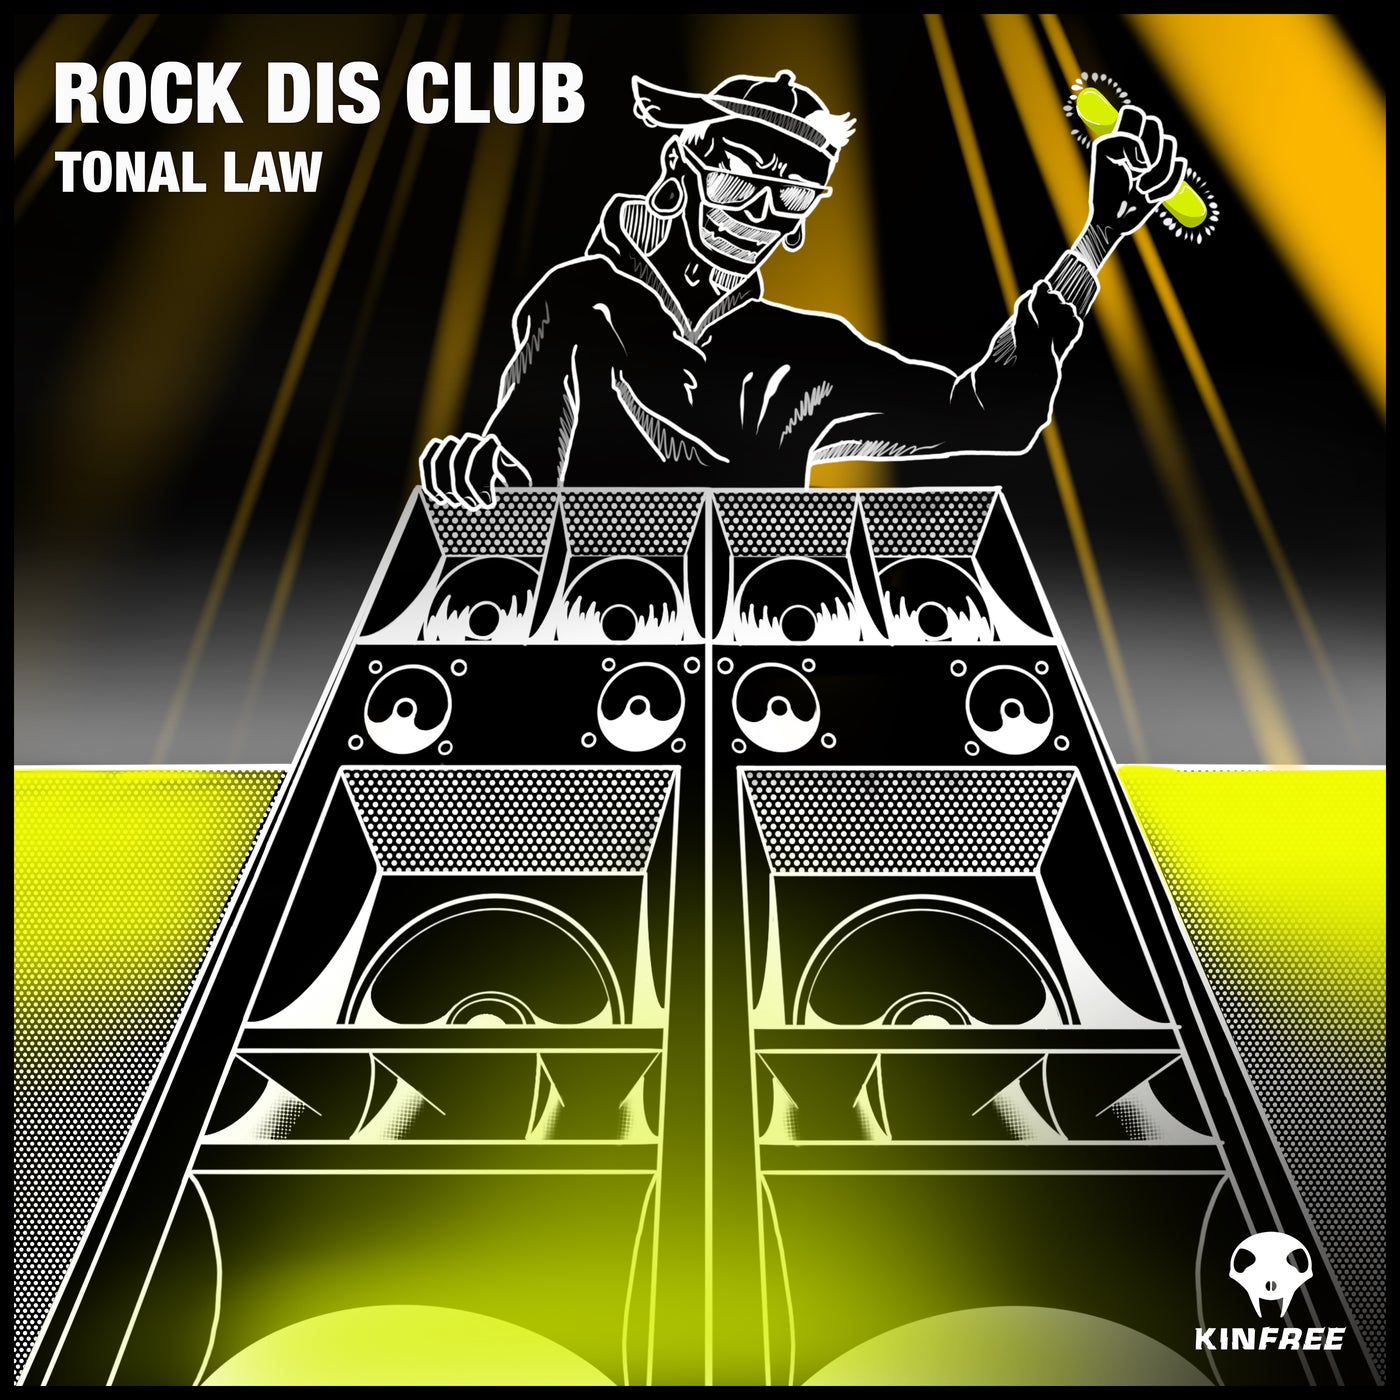 Rock dis club